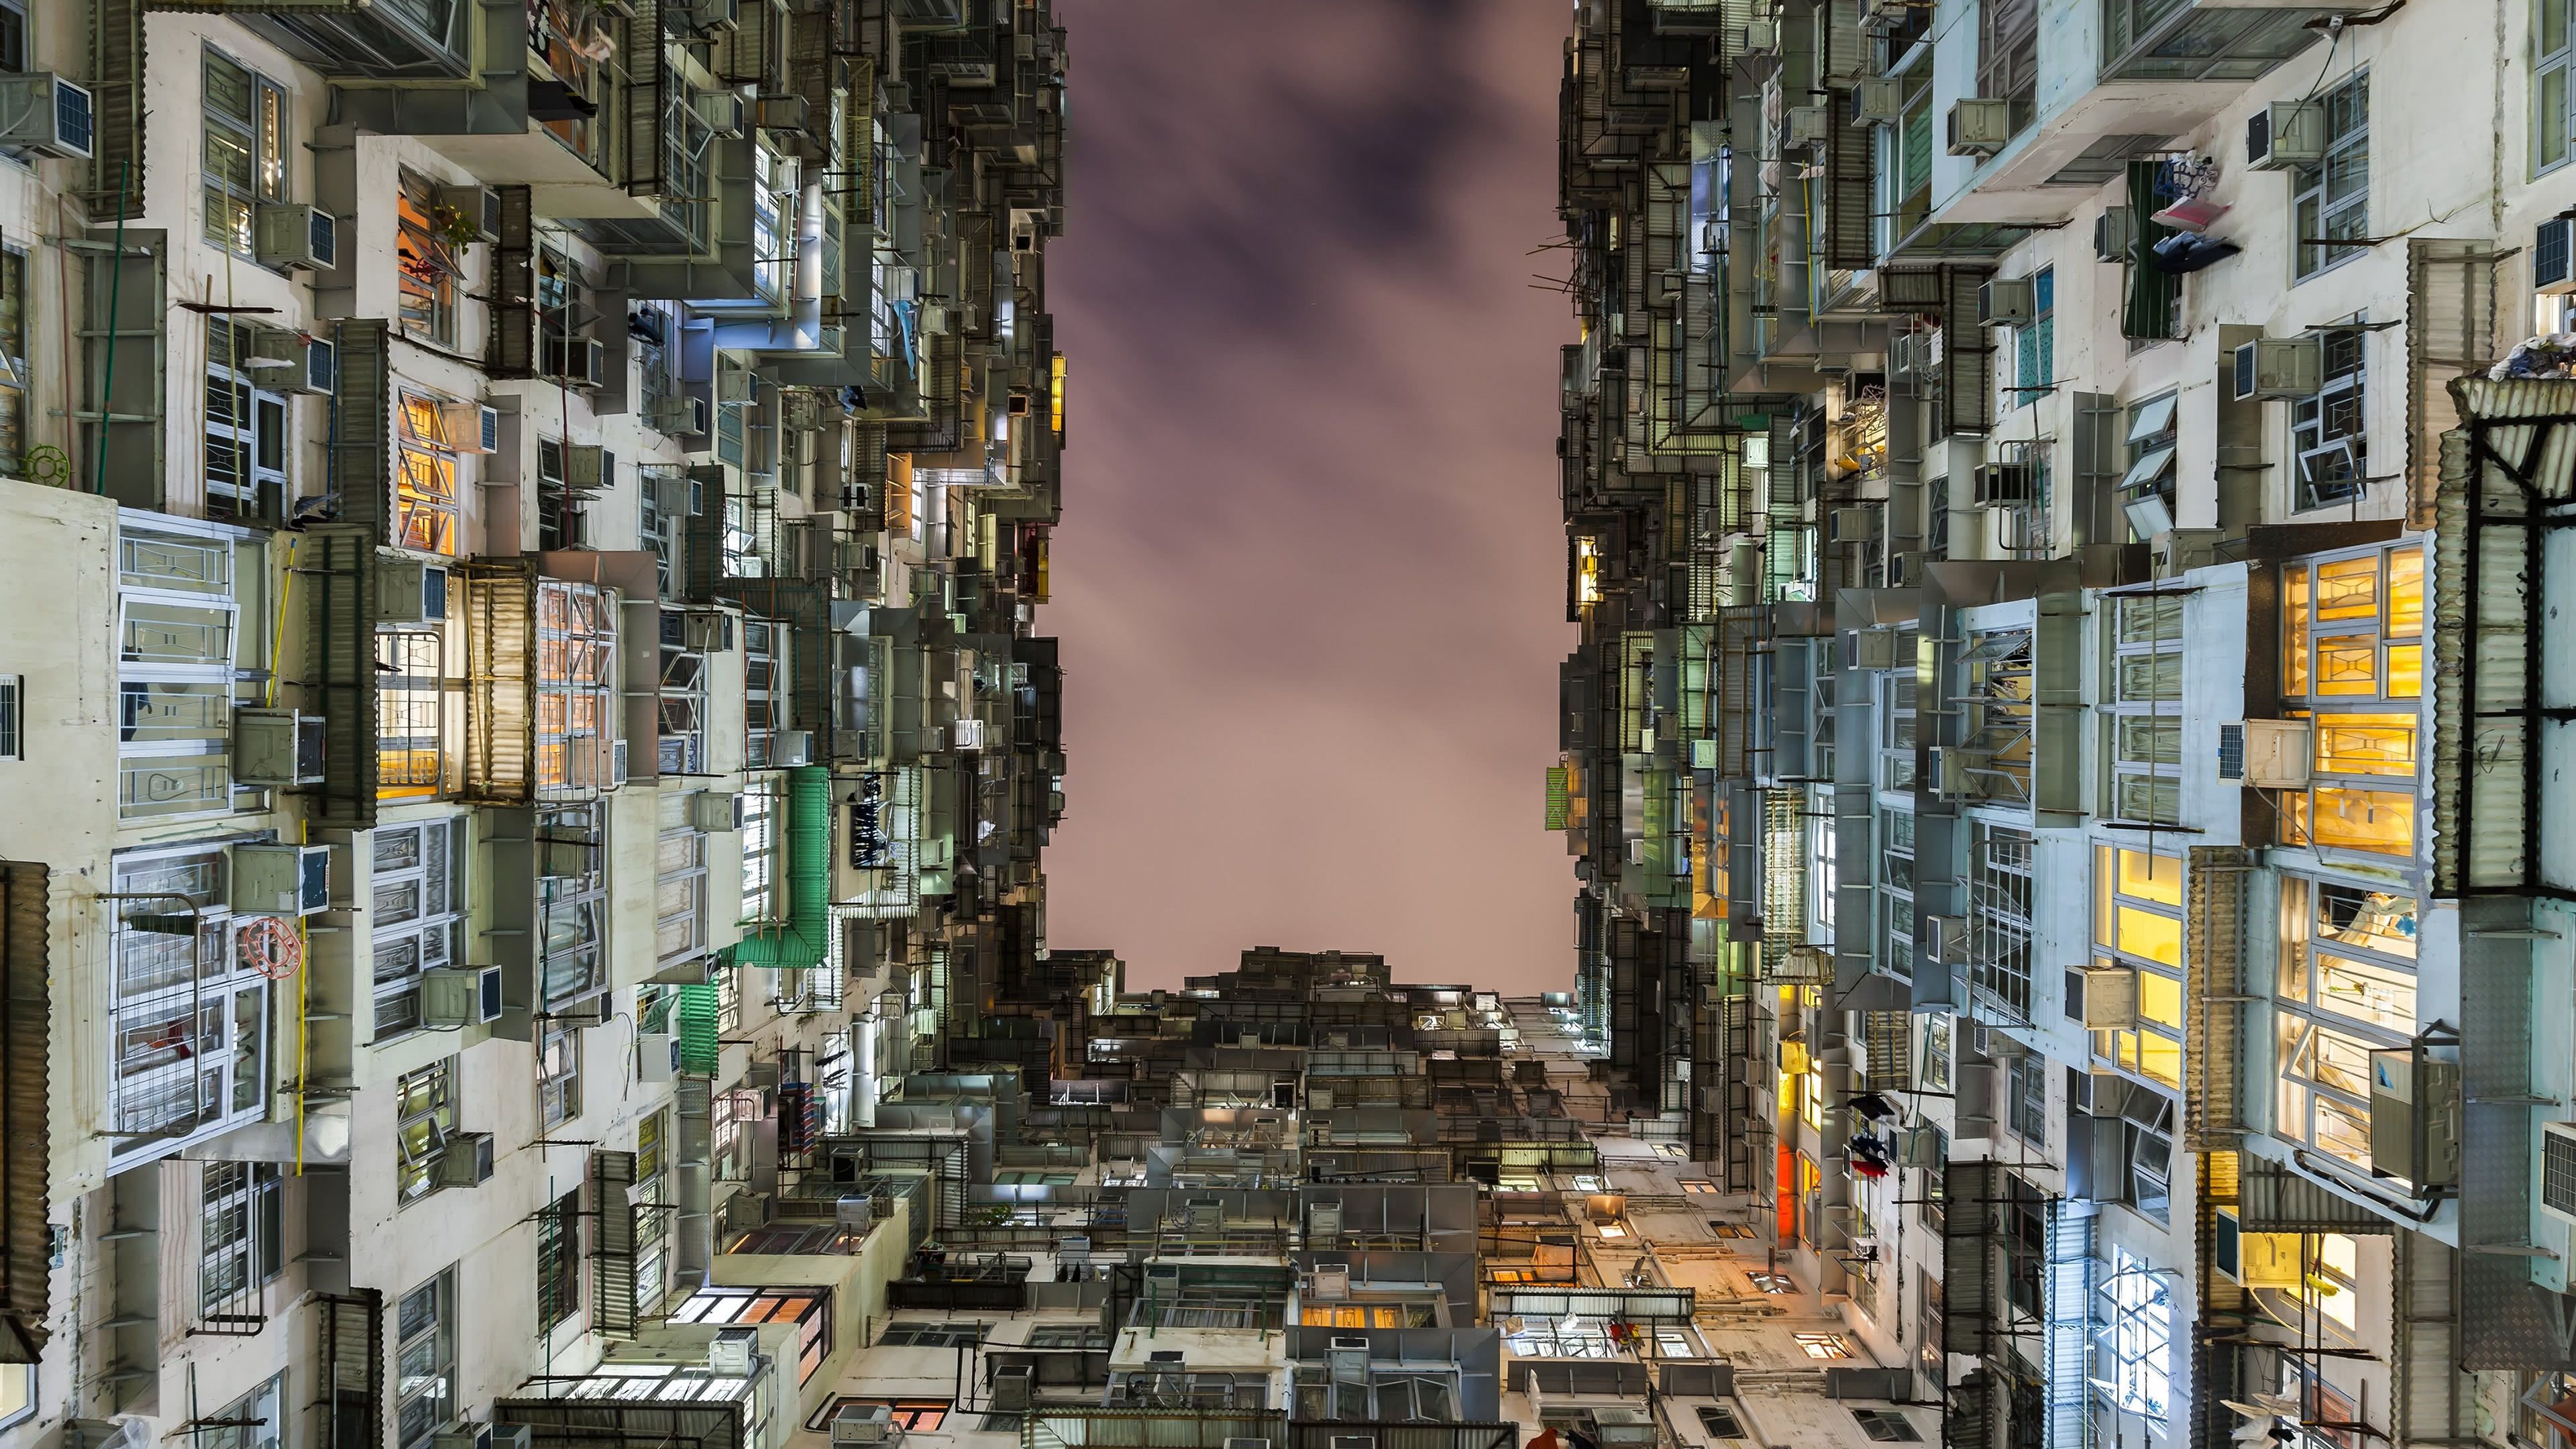 Living In A Box Condos Hong Kong China UHD 4K Wallpaper